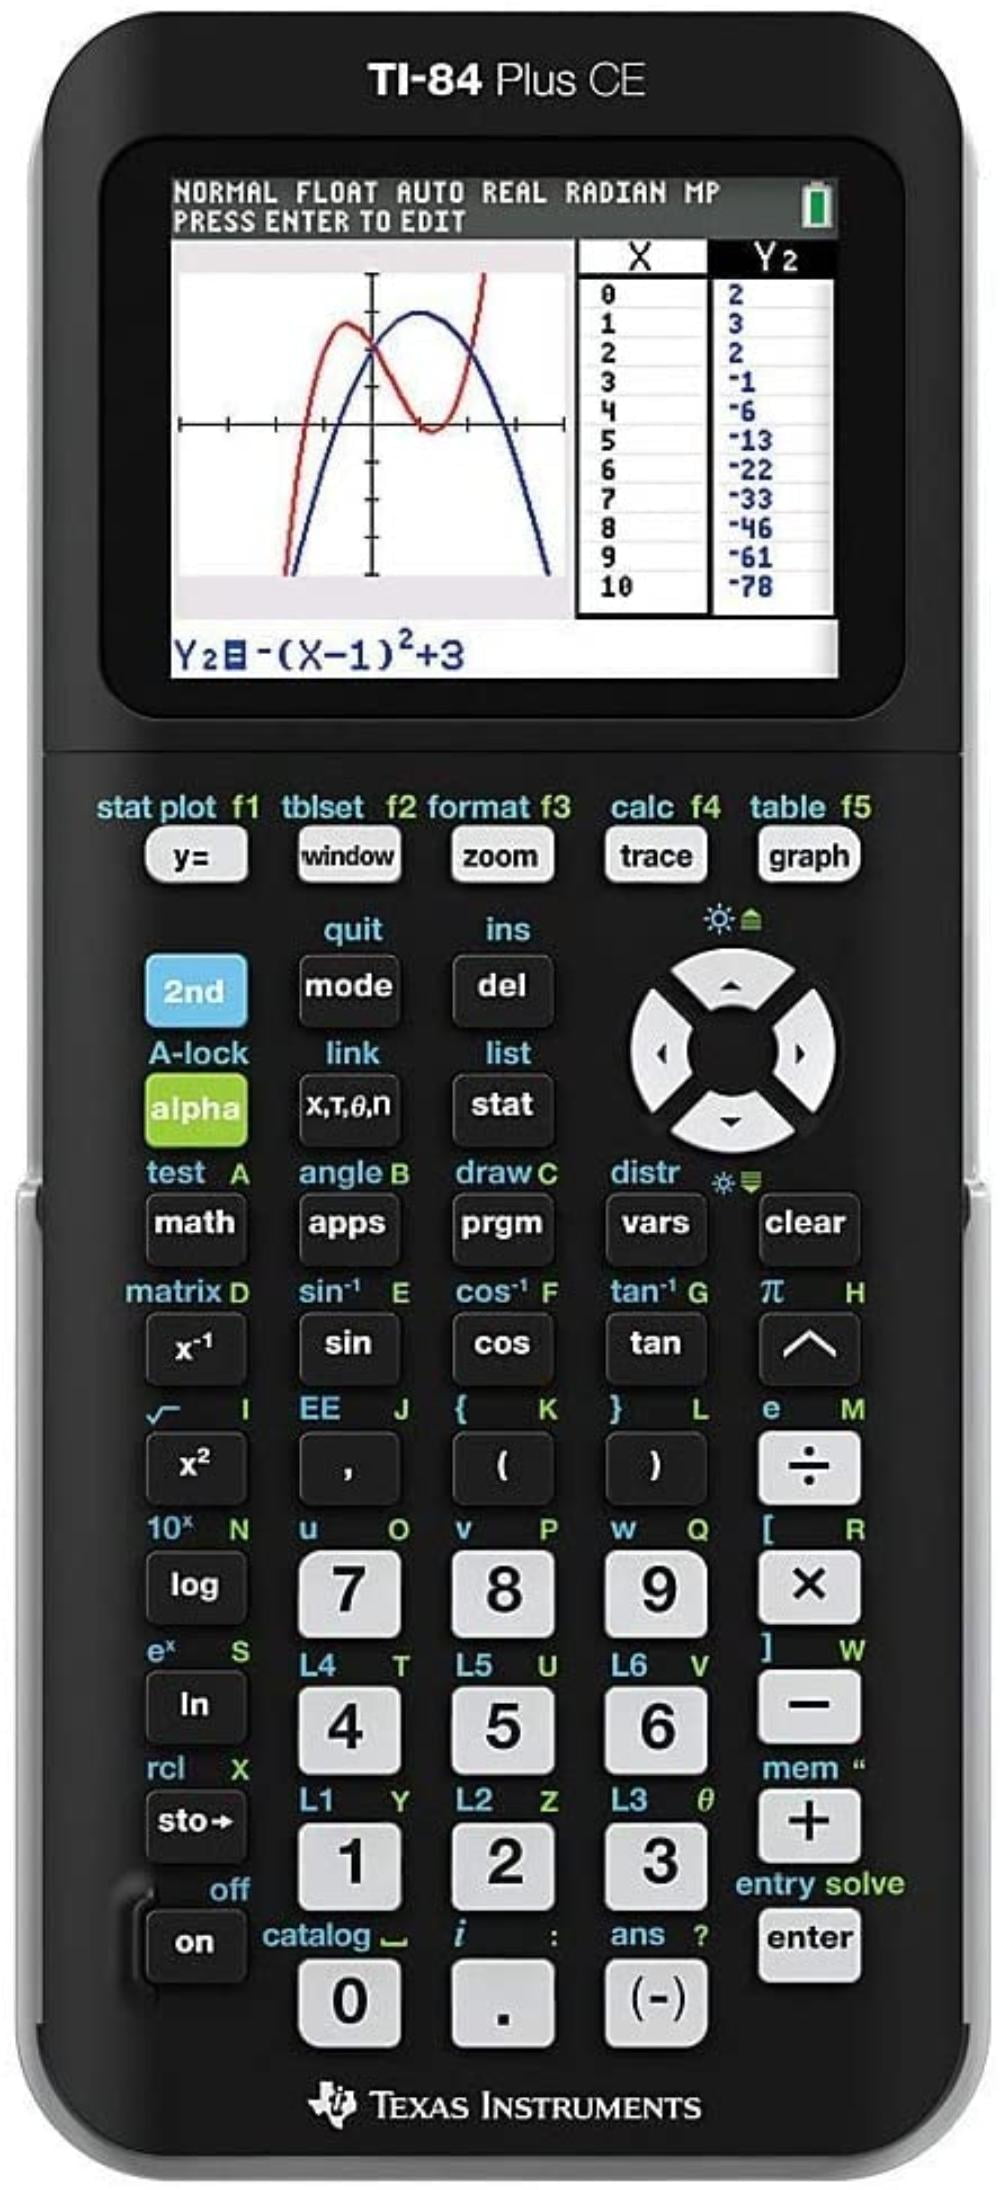 Calculatrice programmable TI86 graphiq - Alger Algeria